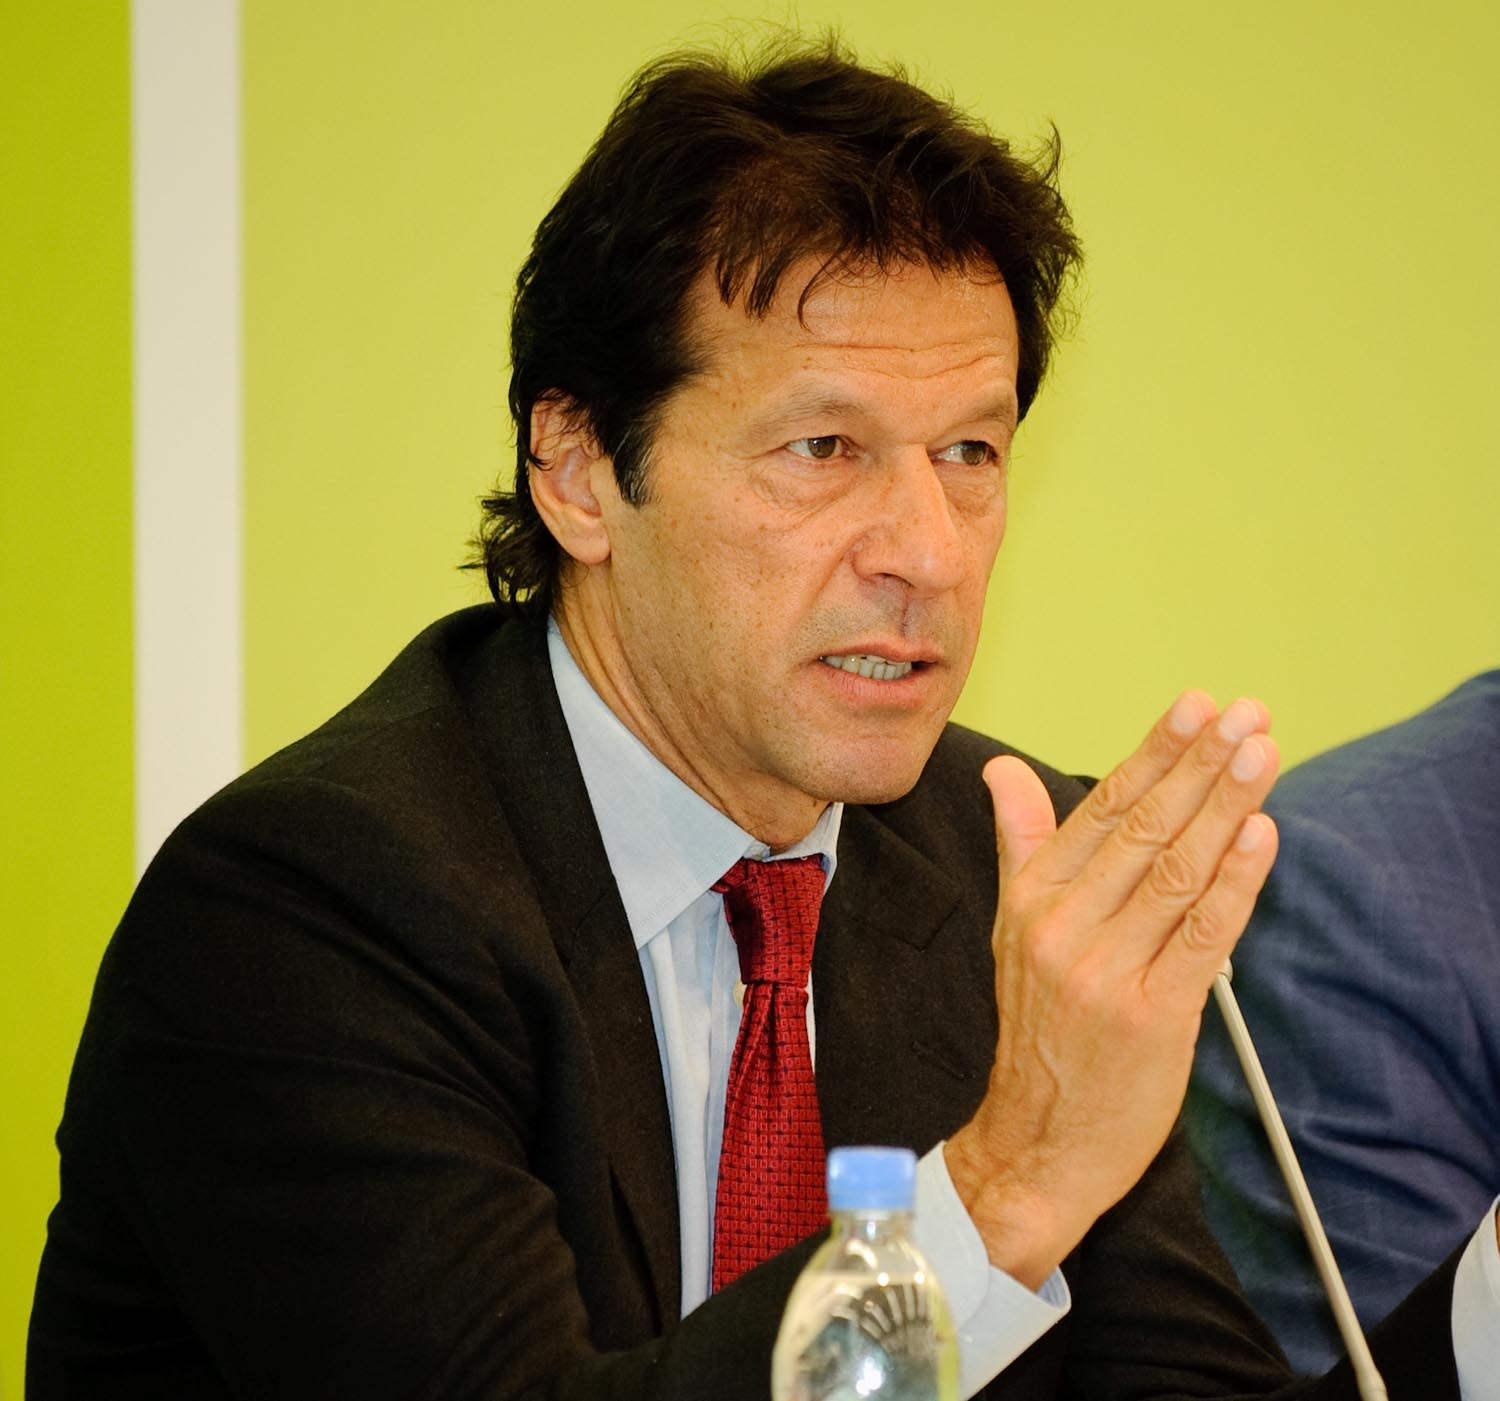 Imran Khan Wearing Red Tie